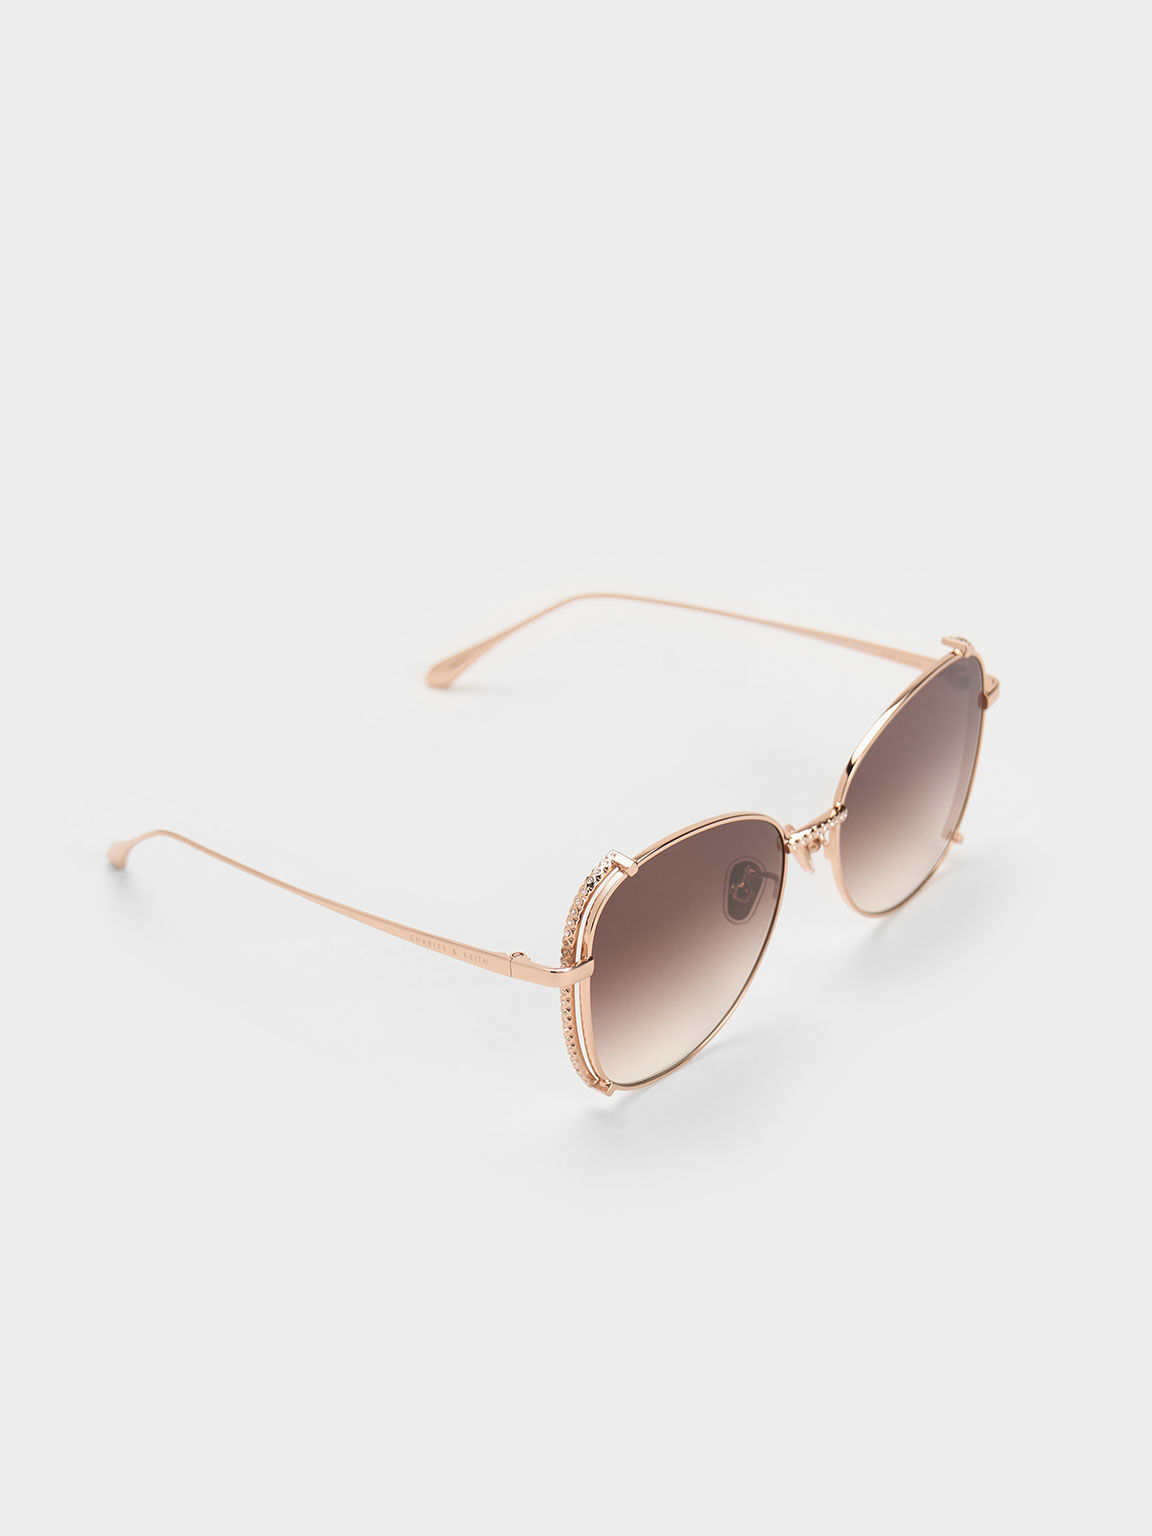 River Rose Gold Rimless Aviator Sunglasses